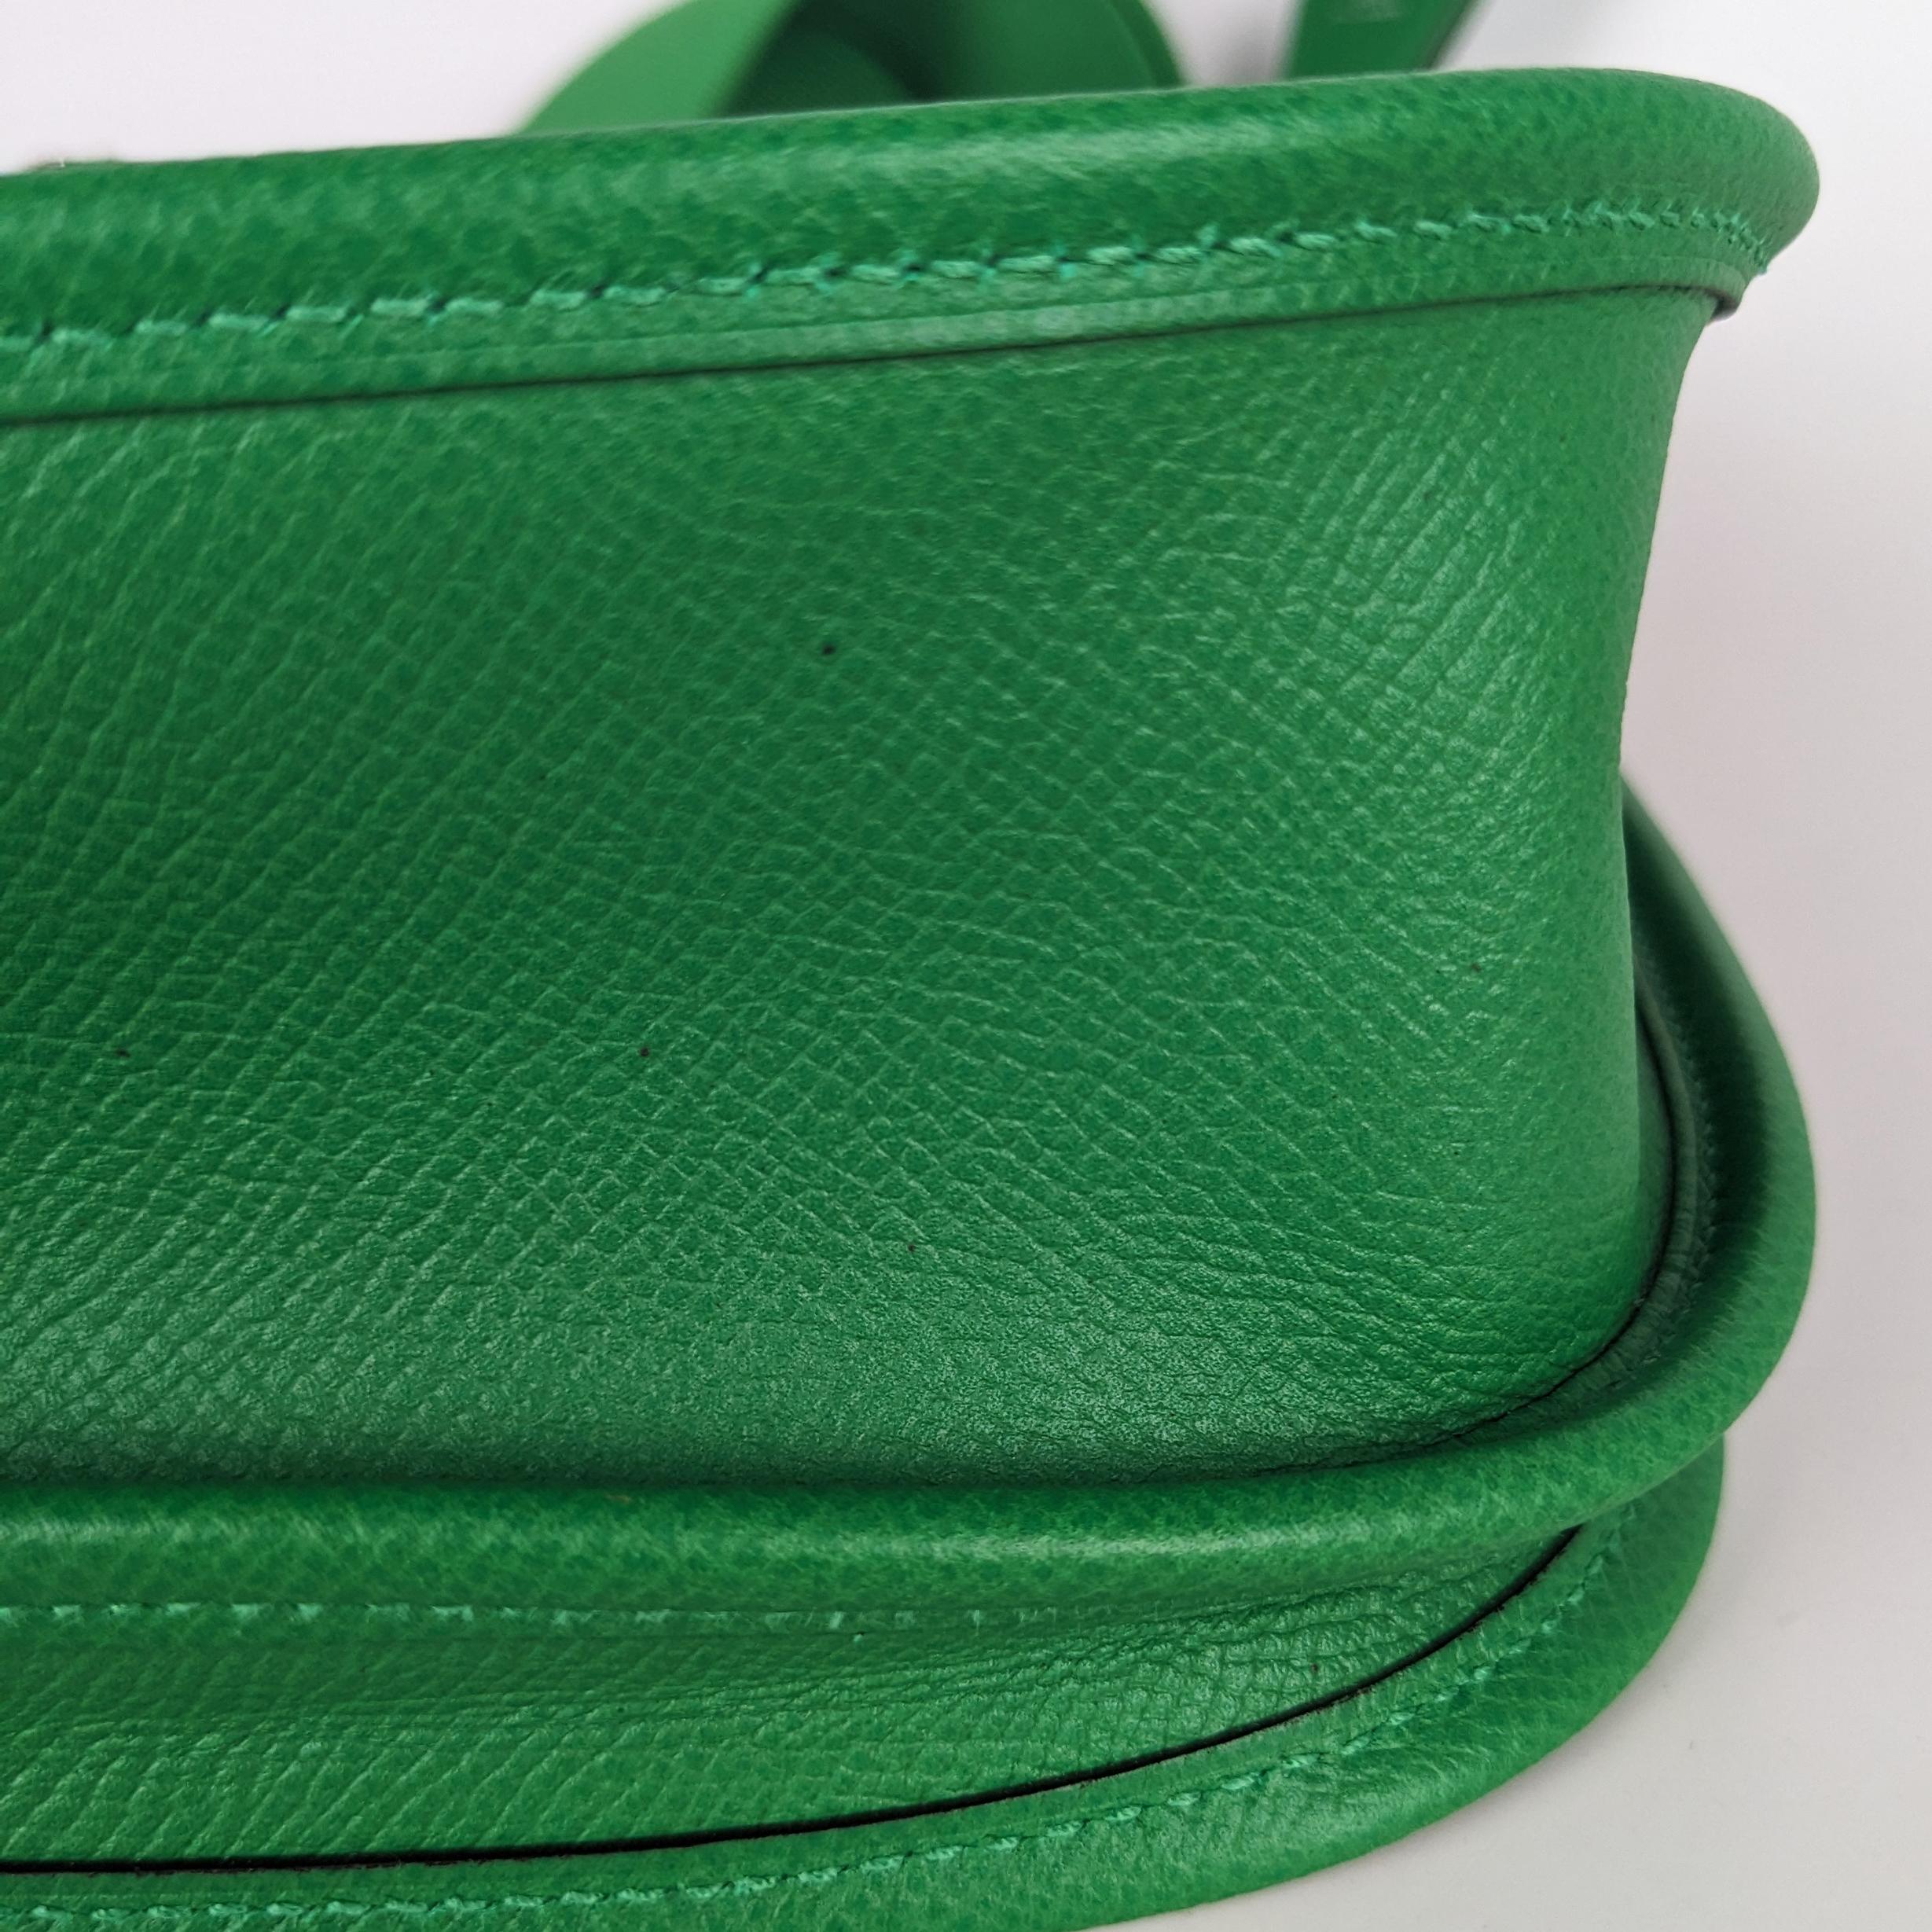 Hermes Evelyne III PM Epsom Bamboo Green Leather Crossbody Bag 2